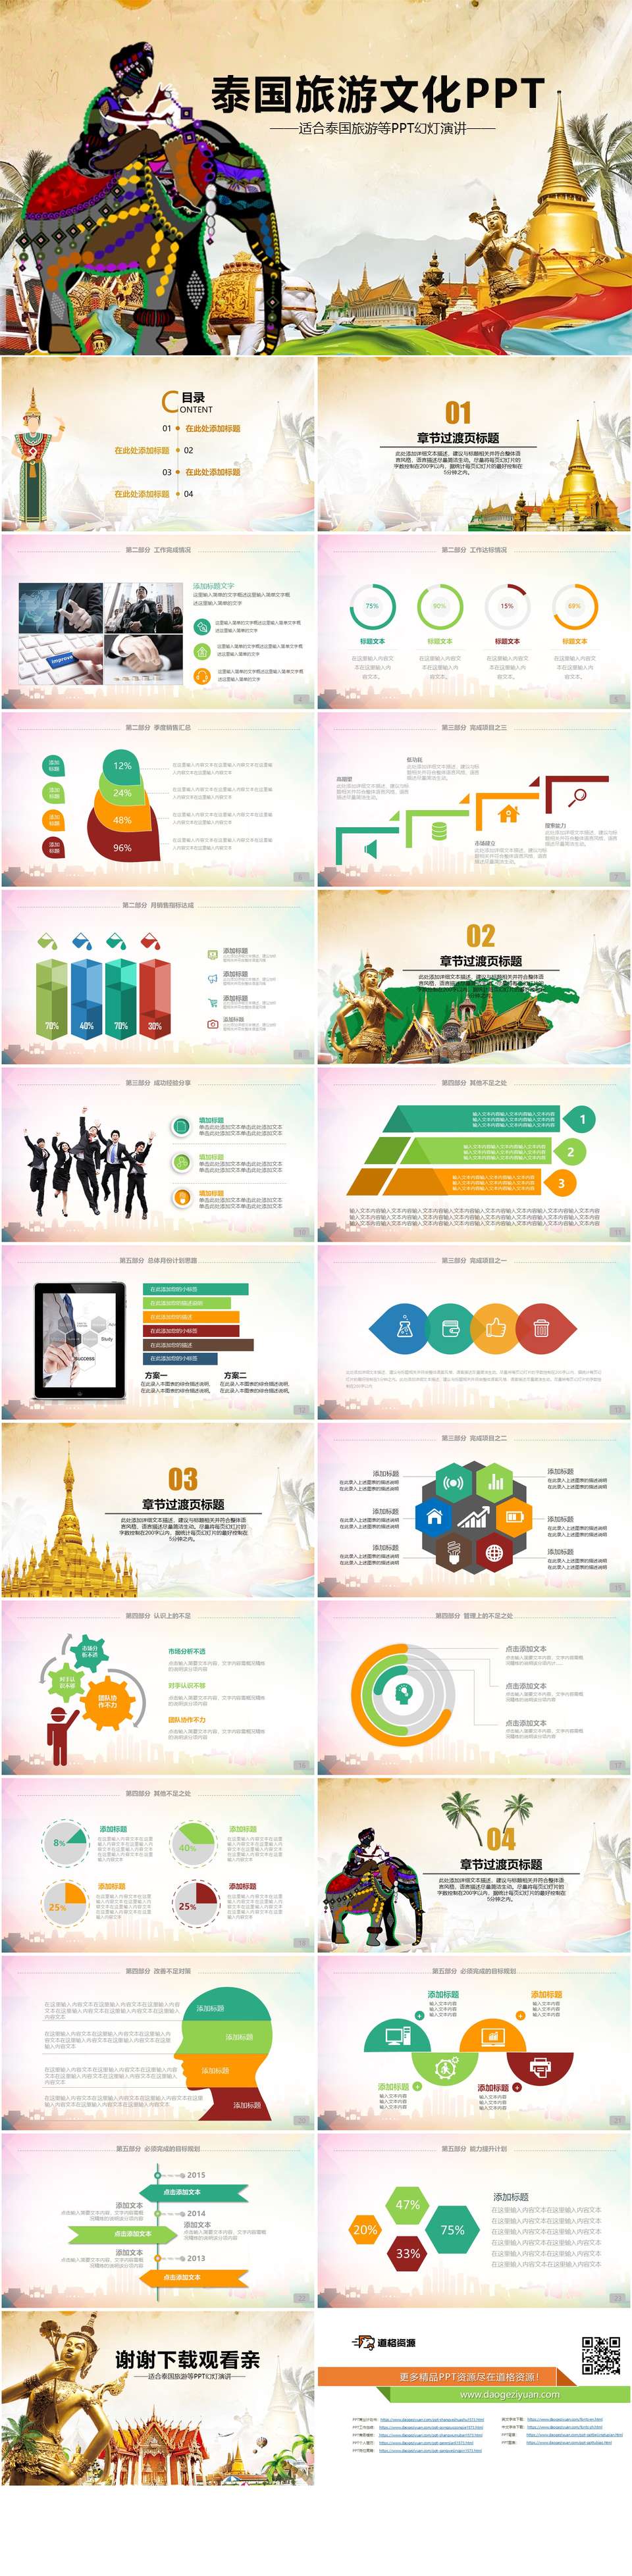 泰国文化泰国旅游PPT模板